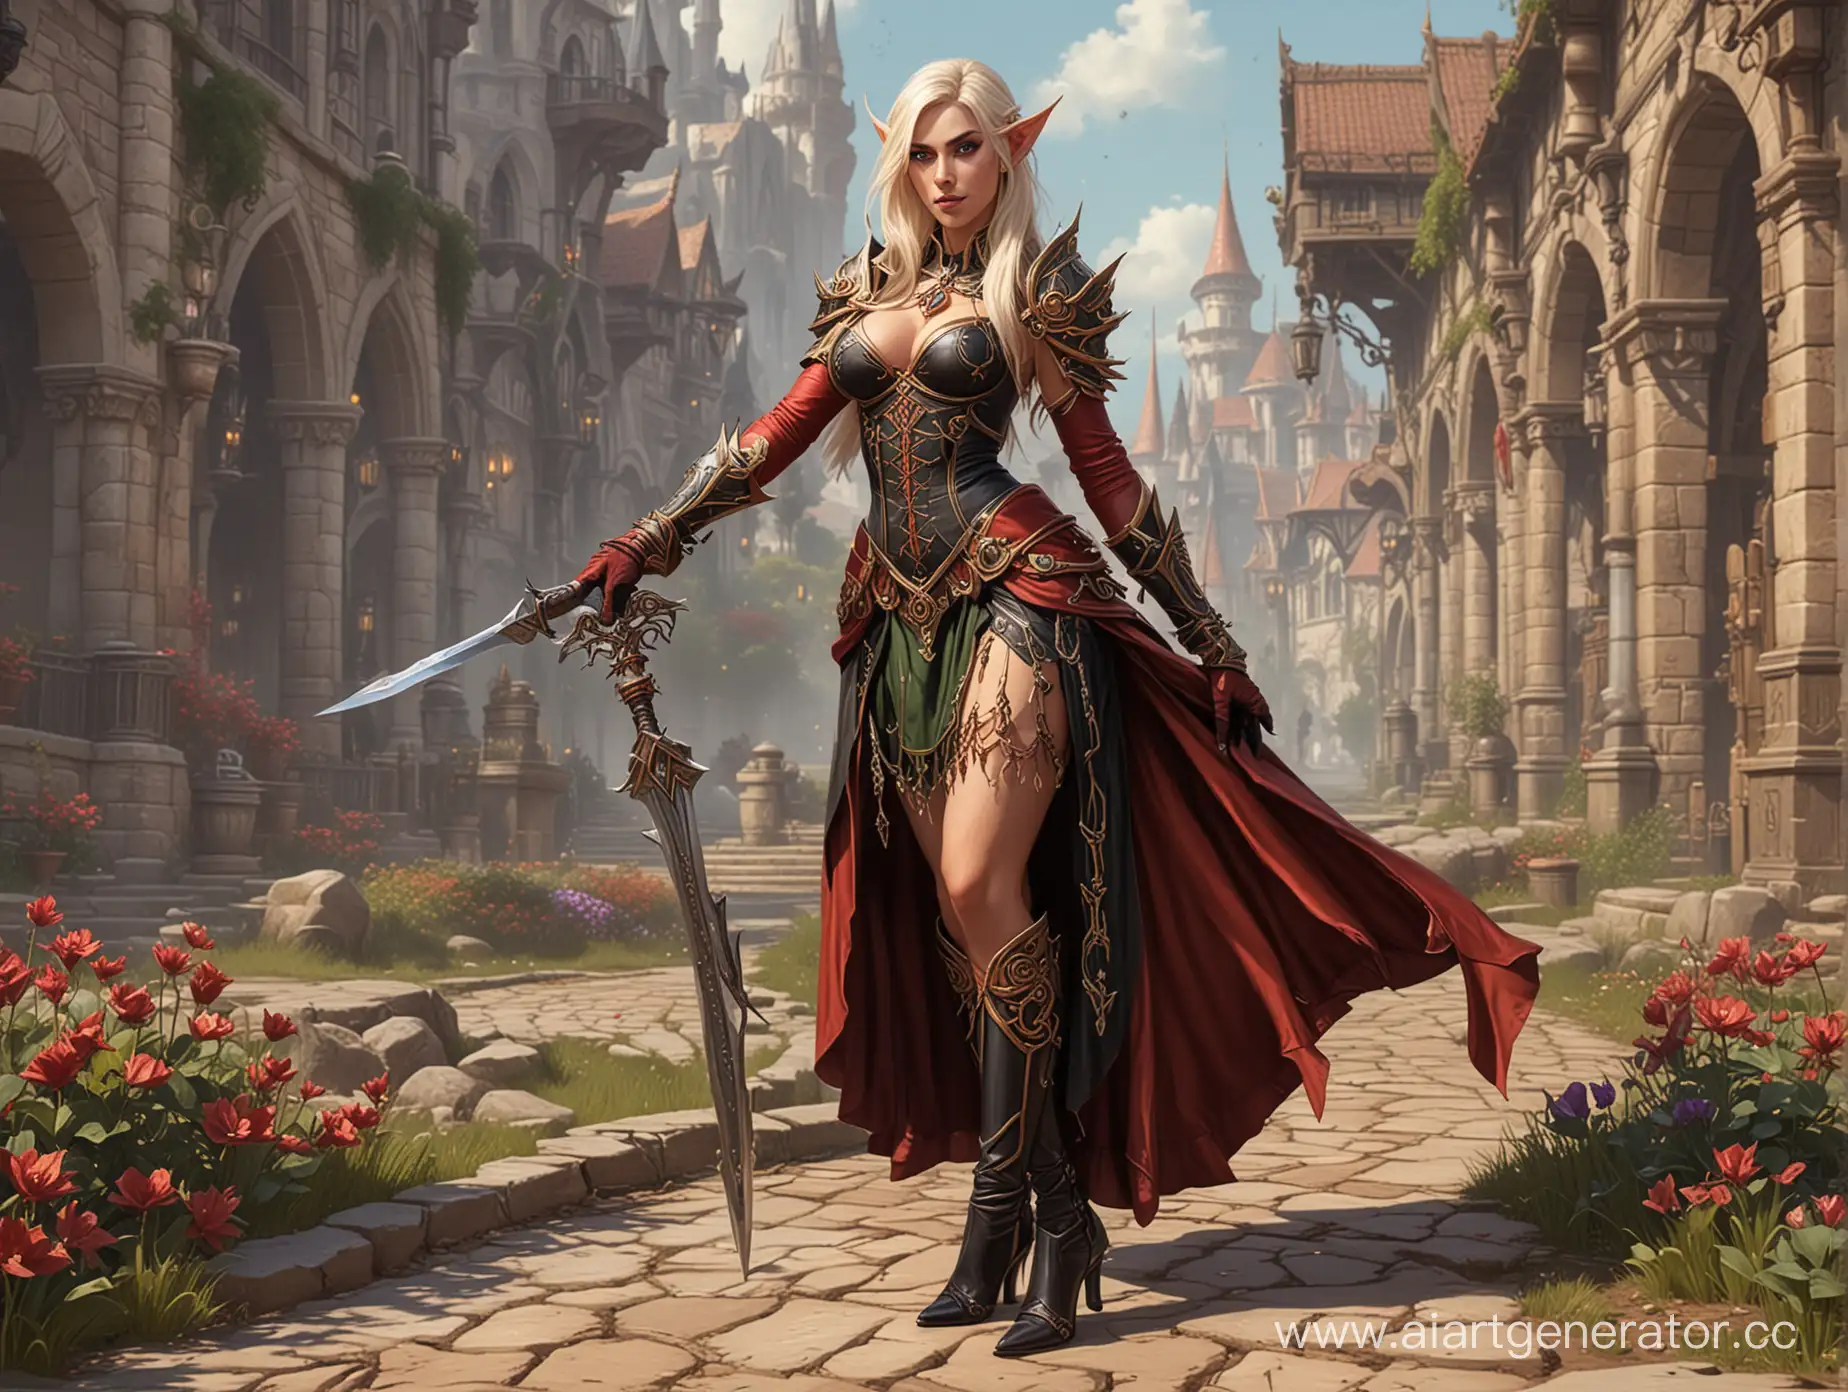 Female blood elf (World of Warcraft) art
В пышном атласном платье. Перчатках и туфлях на шпильке 14.
Пышная юбка по щиколотку и кринолин. Юбка со стальными кольцами. Гуляет в эльфийском городе.